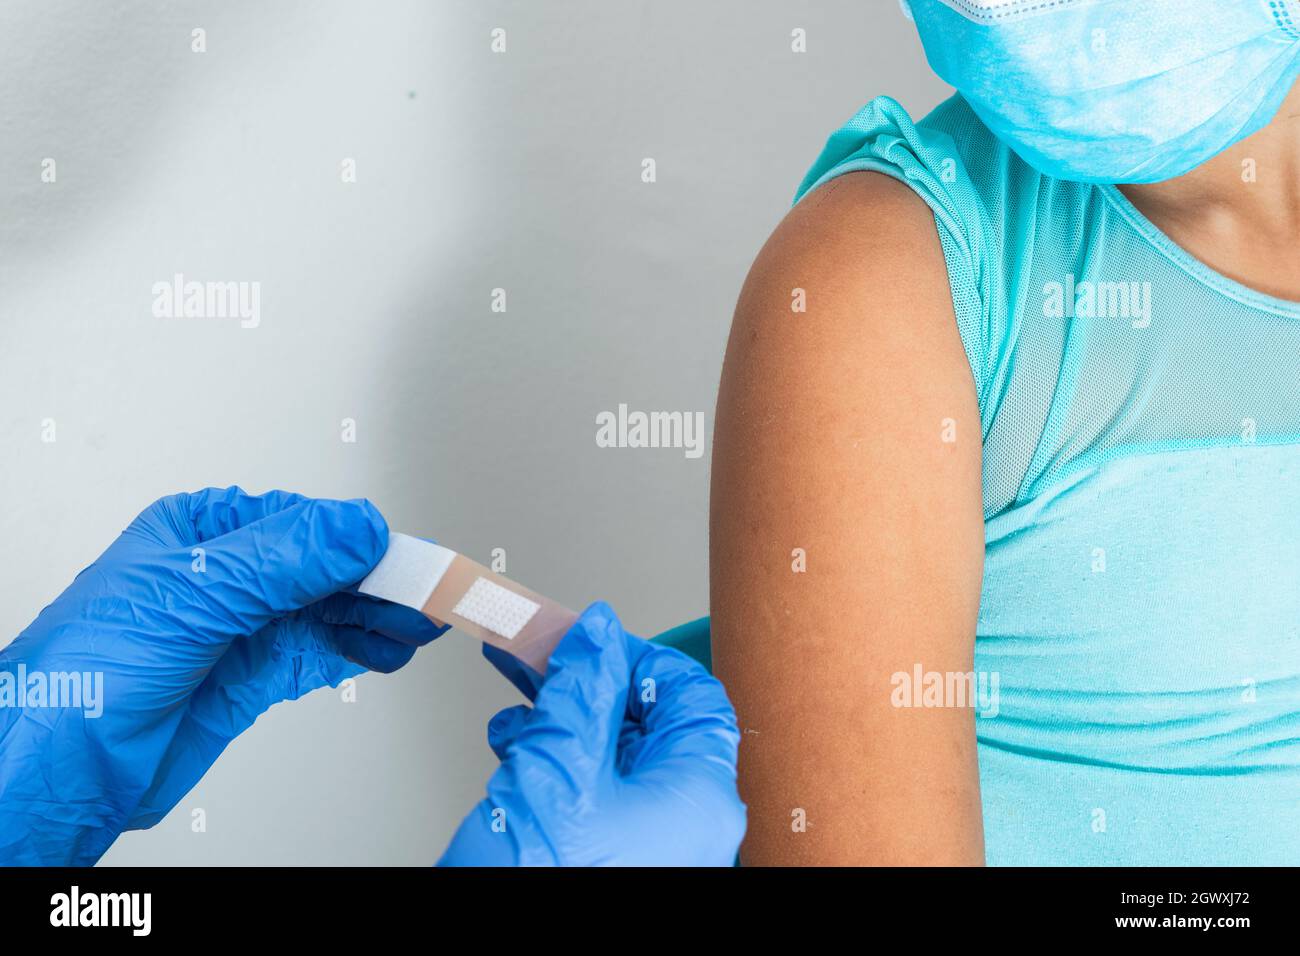 Medico in guanti protettivi di gomma blu mettendo un bendaggio adesivo sul braccio di una ragazza dopo aver ferito la pelle o iniettato il vaccino. Pronto soccorso. Medico, p Foto Stock